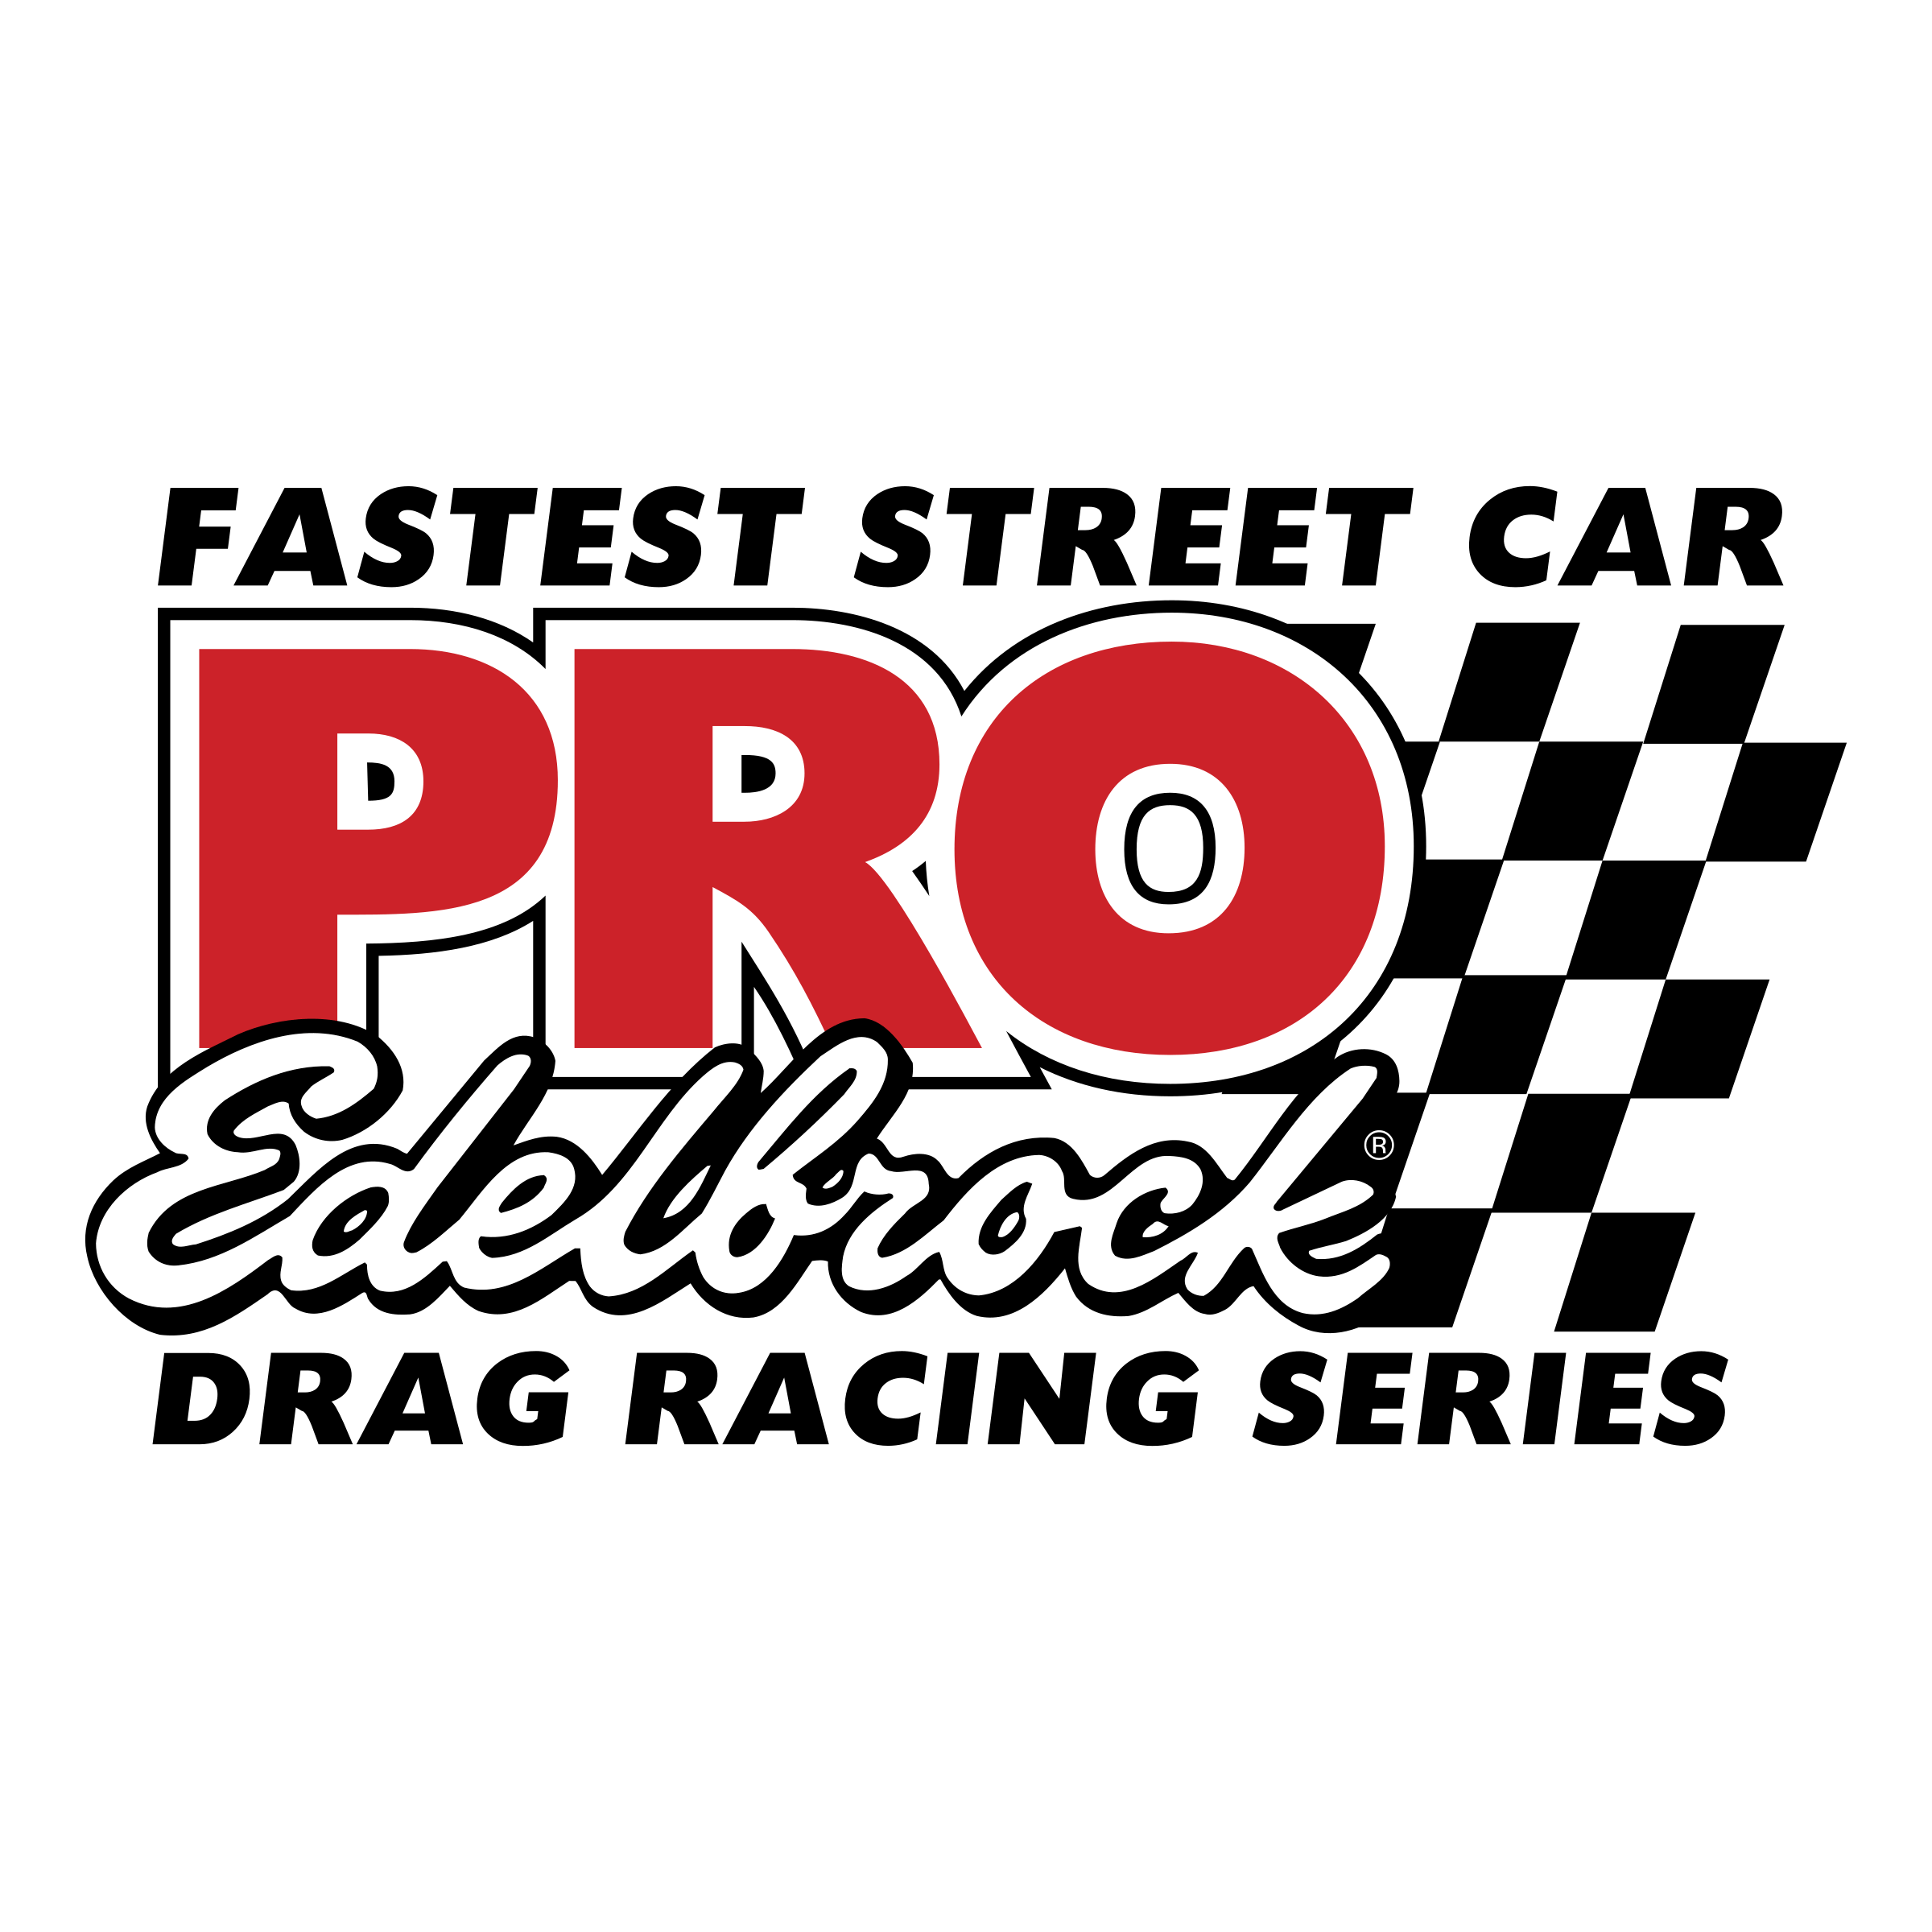 Edelbrock Logo - PRO Edelbrock Drag Racing Series Logo PNG Transparent & SVG Vector ...